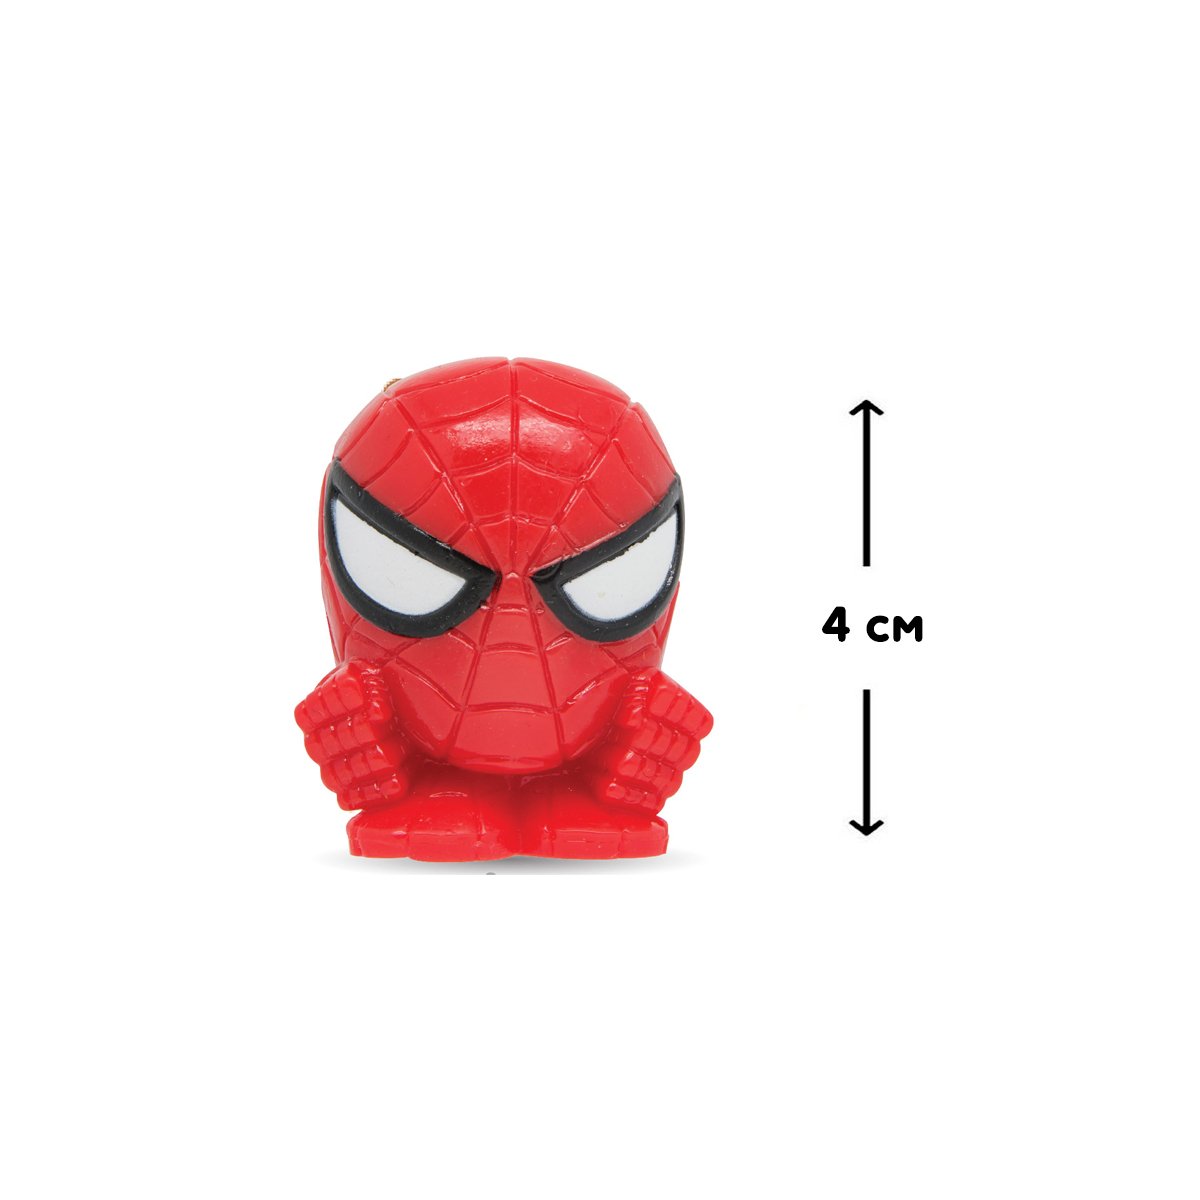 Іграшка-сюрприз у кулі Mash'ems, людина павук, в асортименті (51786) - фото 2